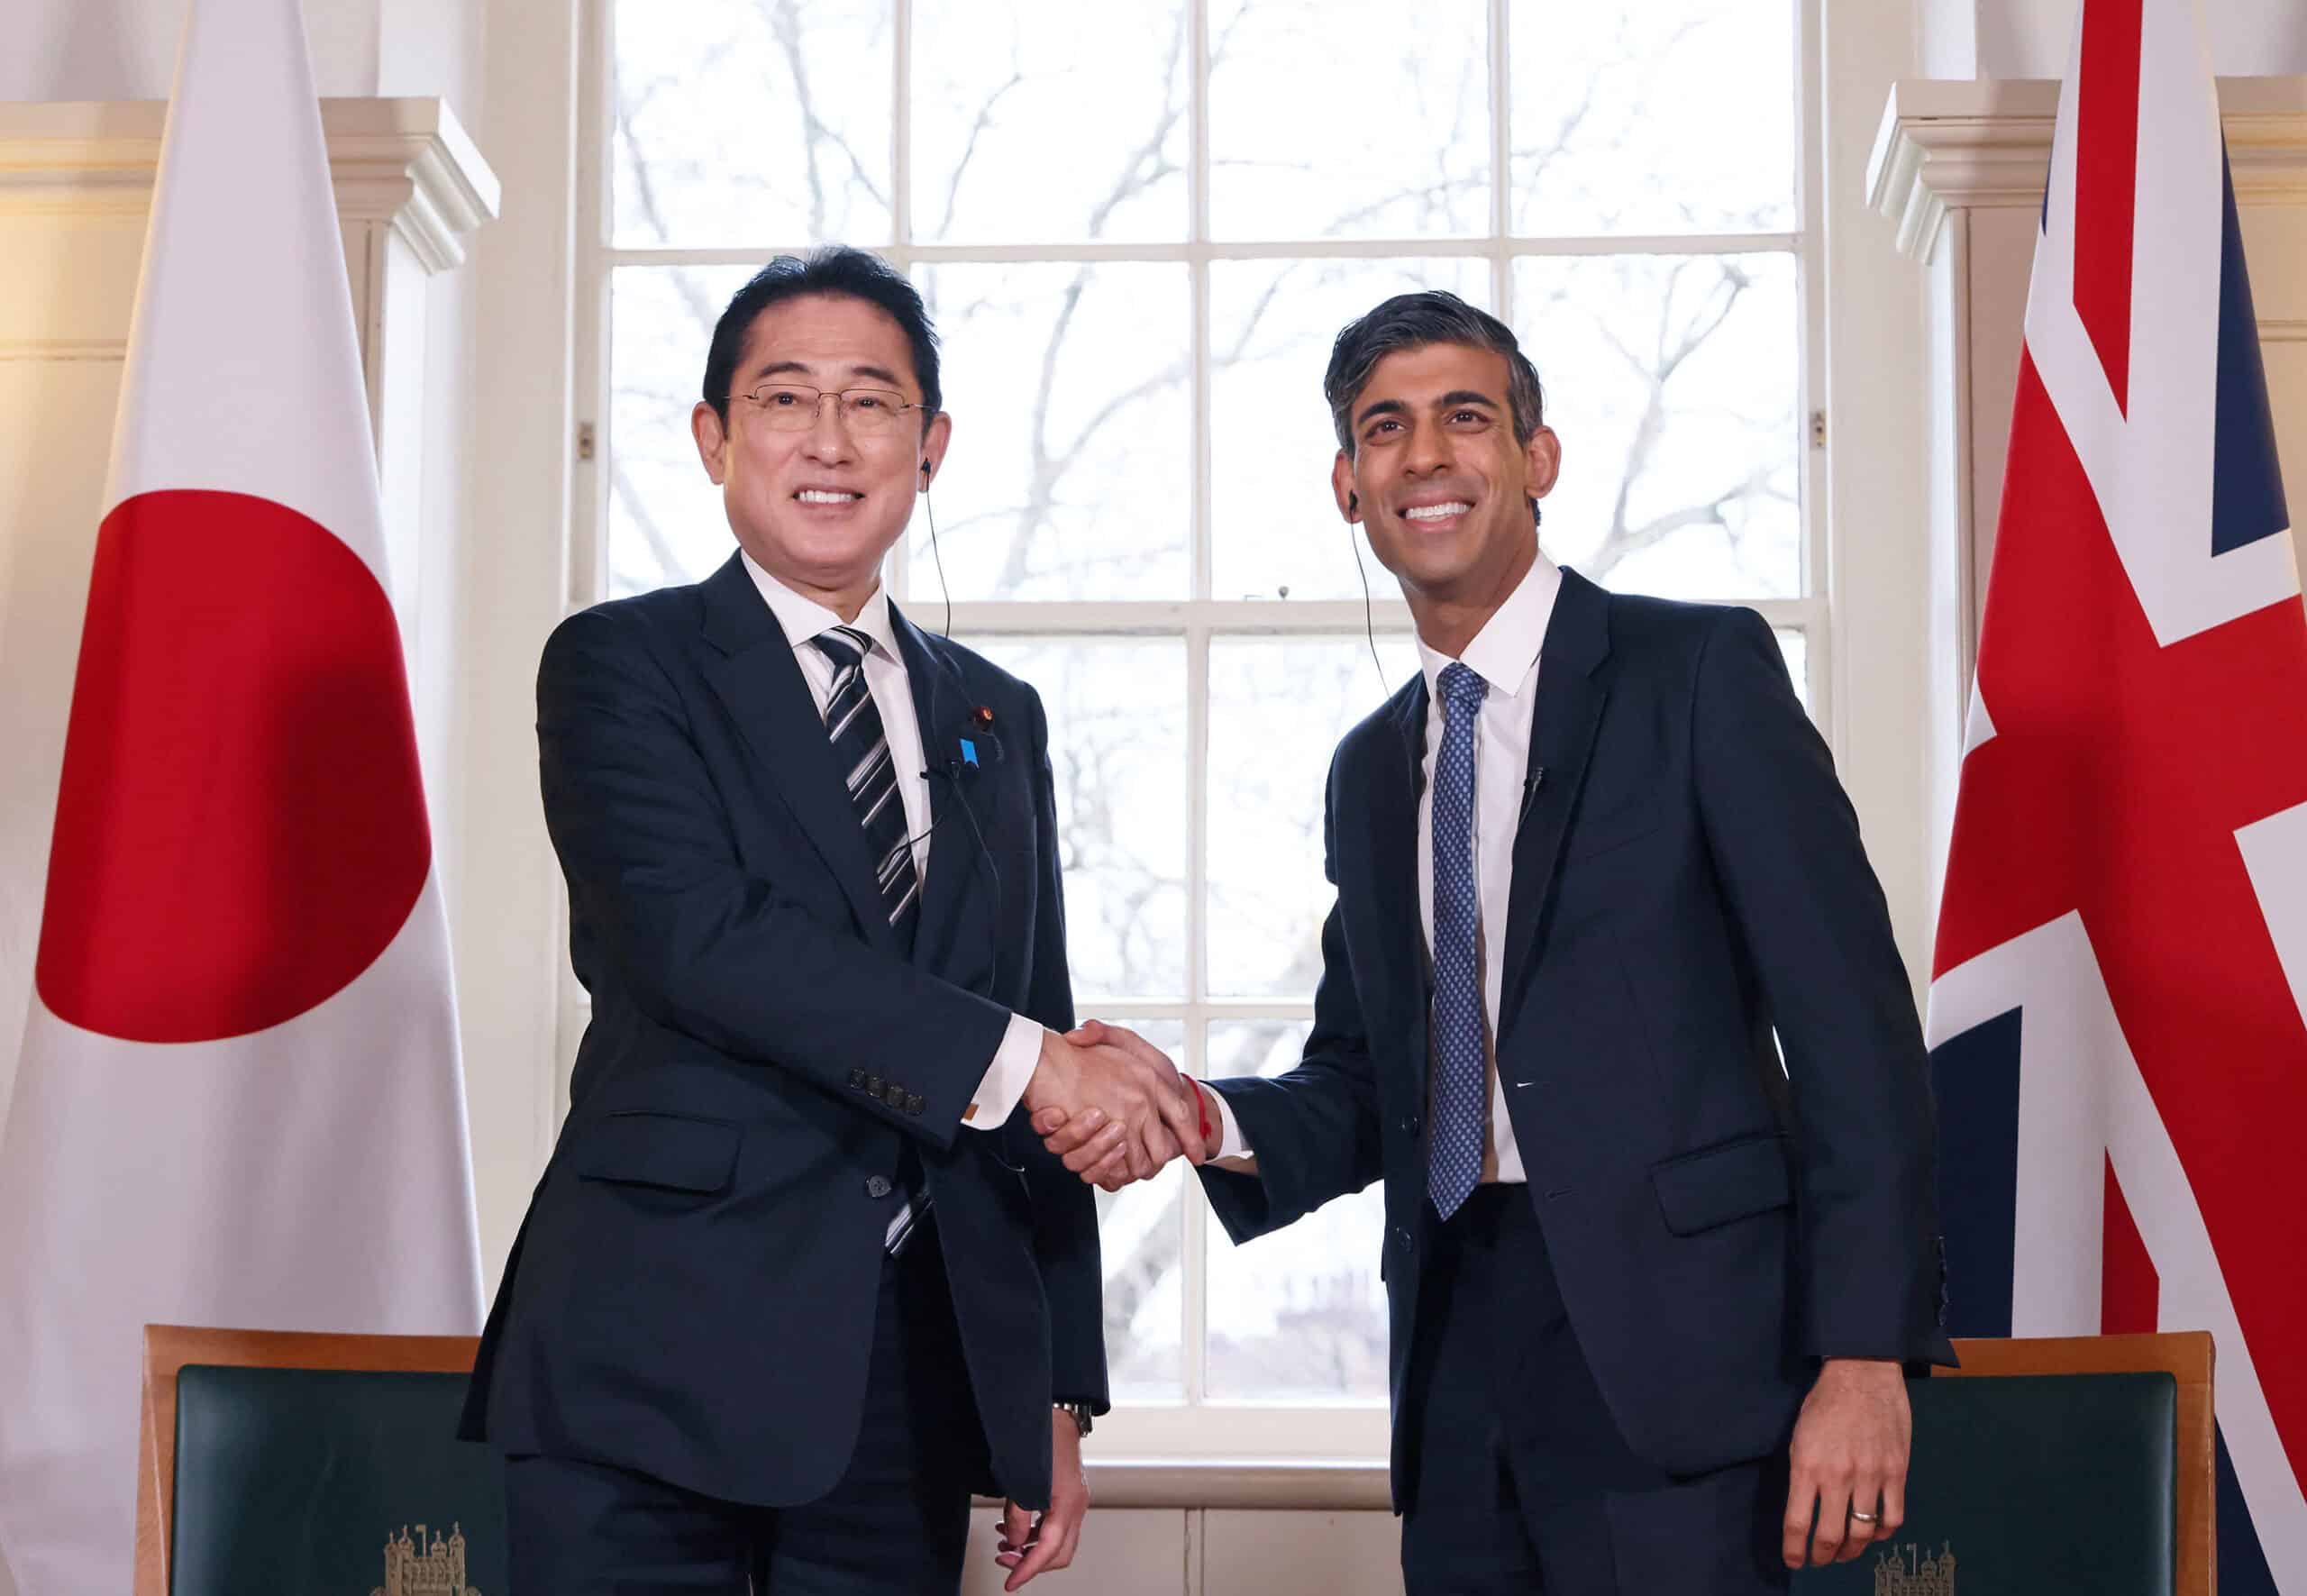 بعد اتفاق هيروشيما .. هل تستطيع المملكة المتحدة واليابان منافسة القوى العظمى؟